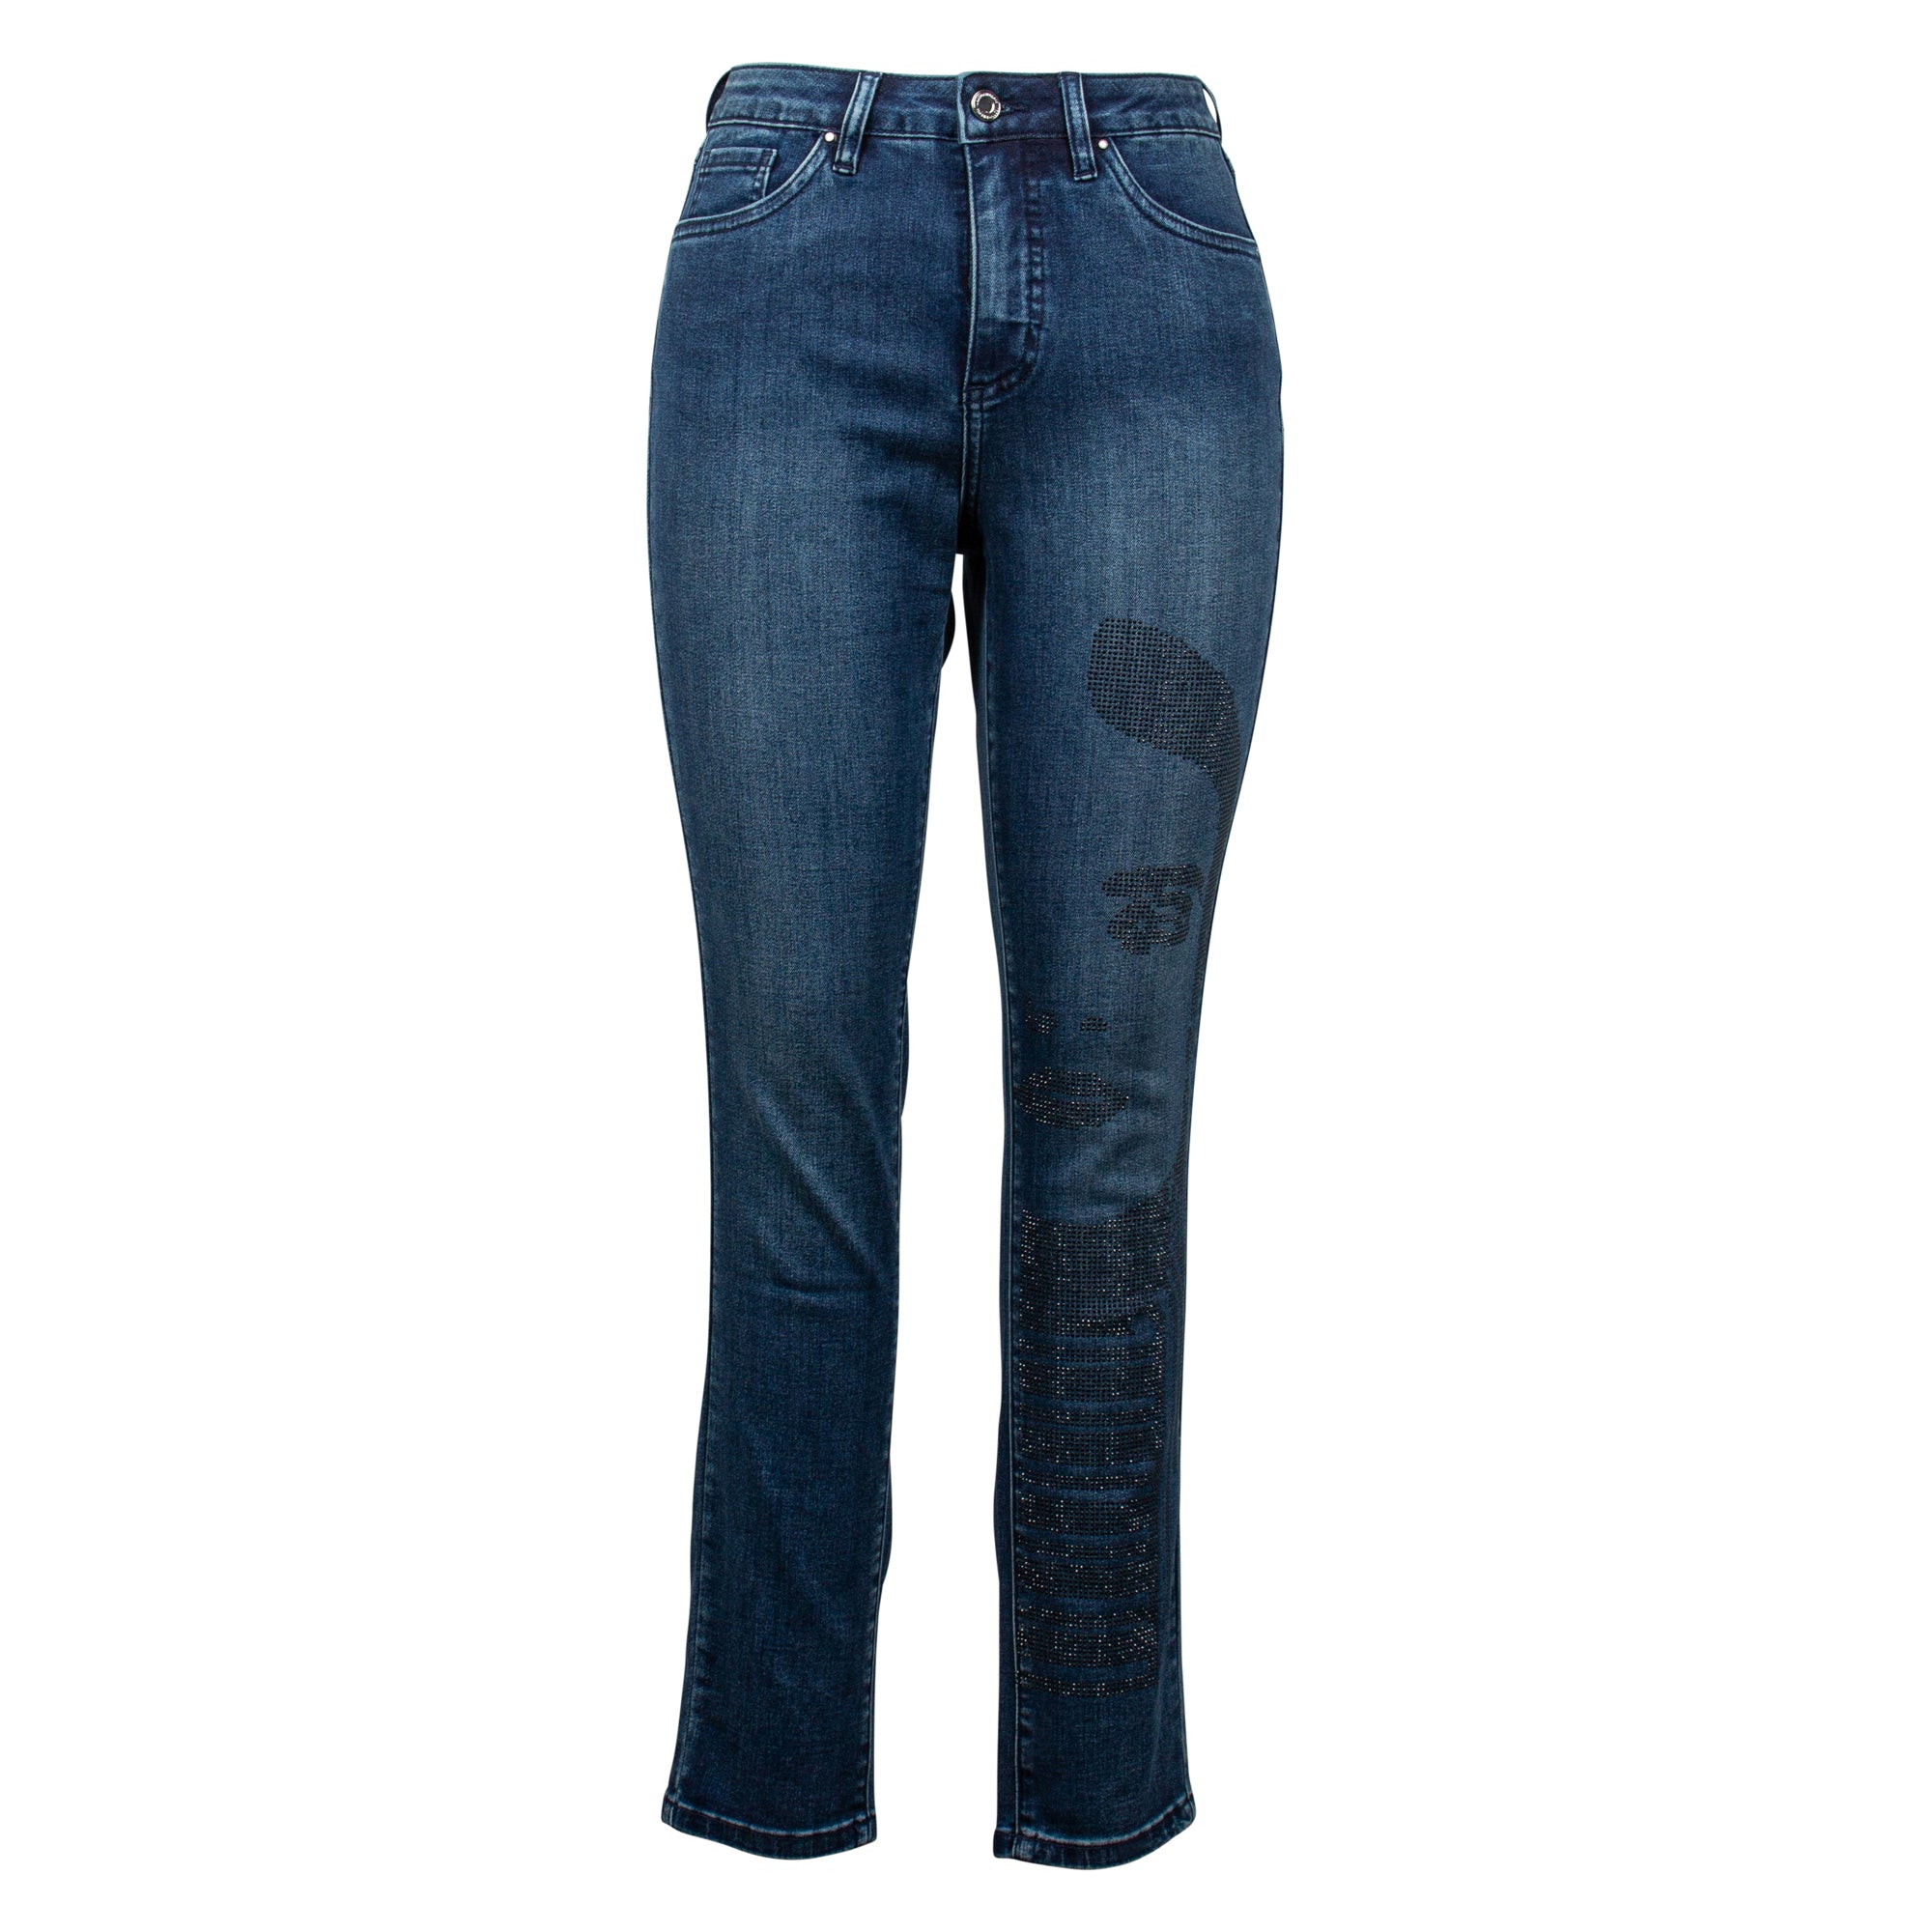 Ribkoff Jeans 213973